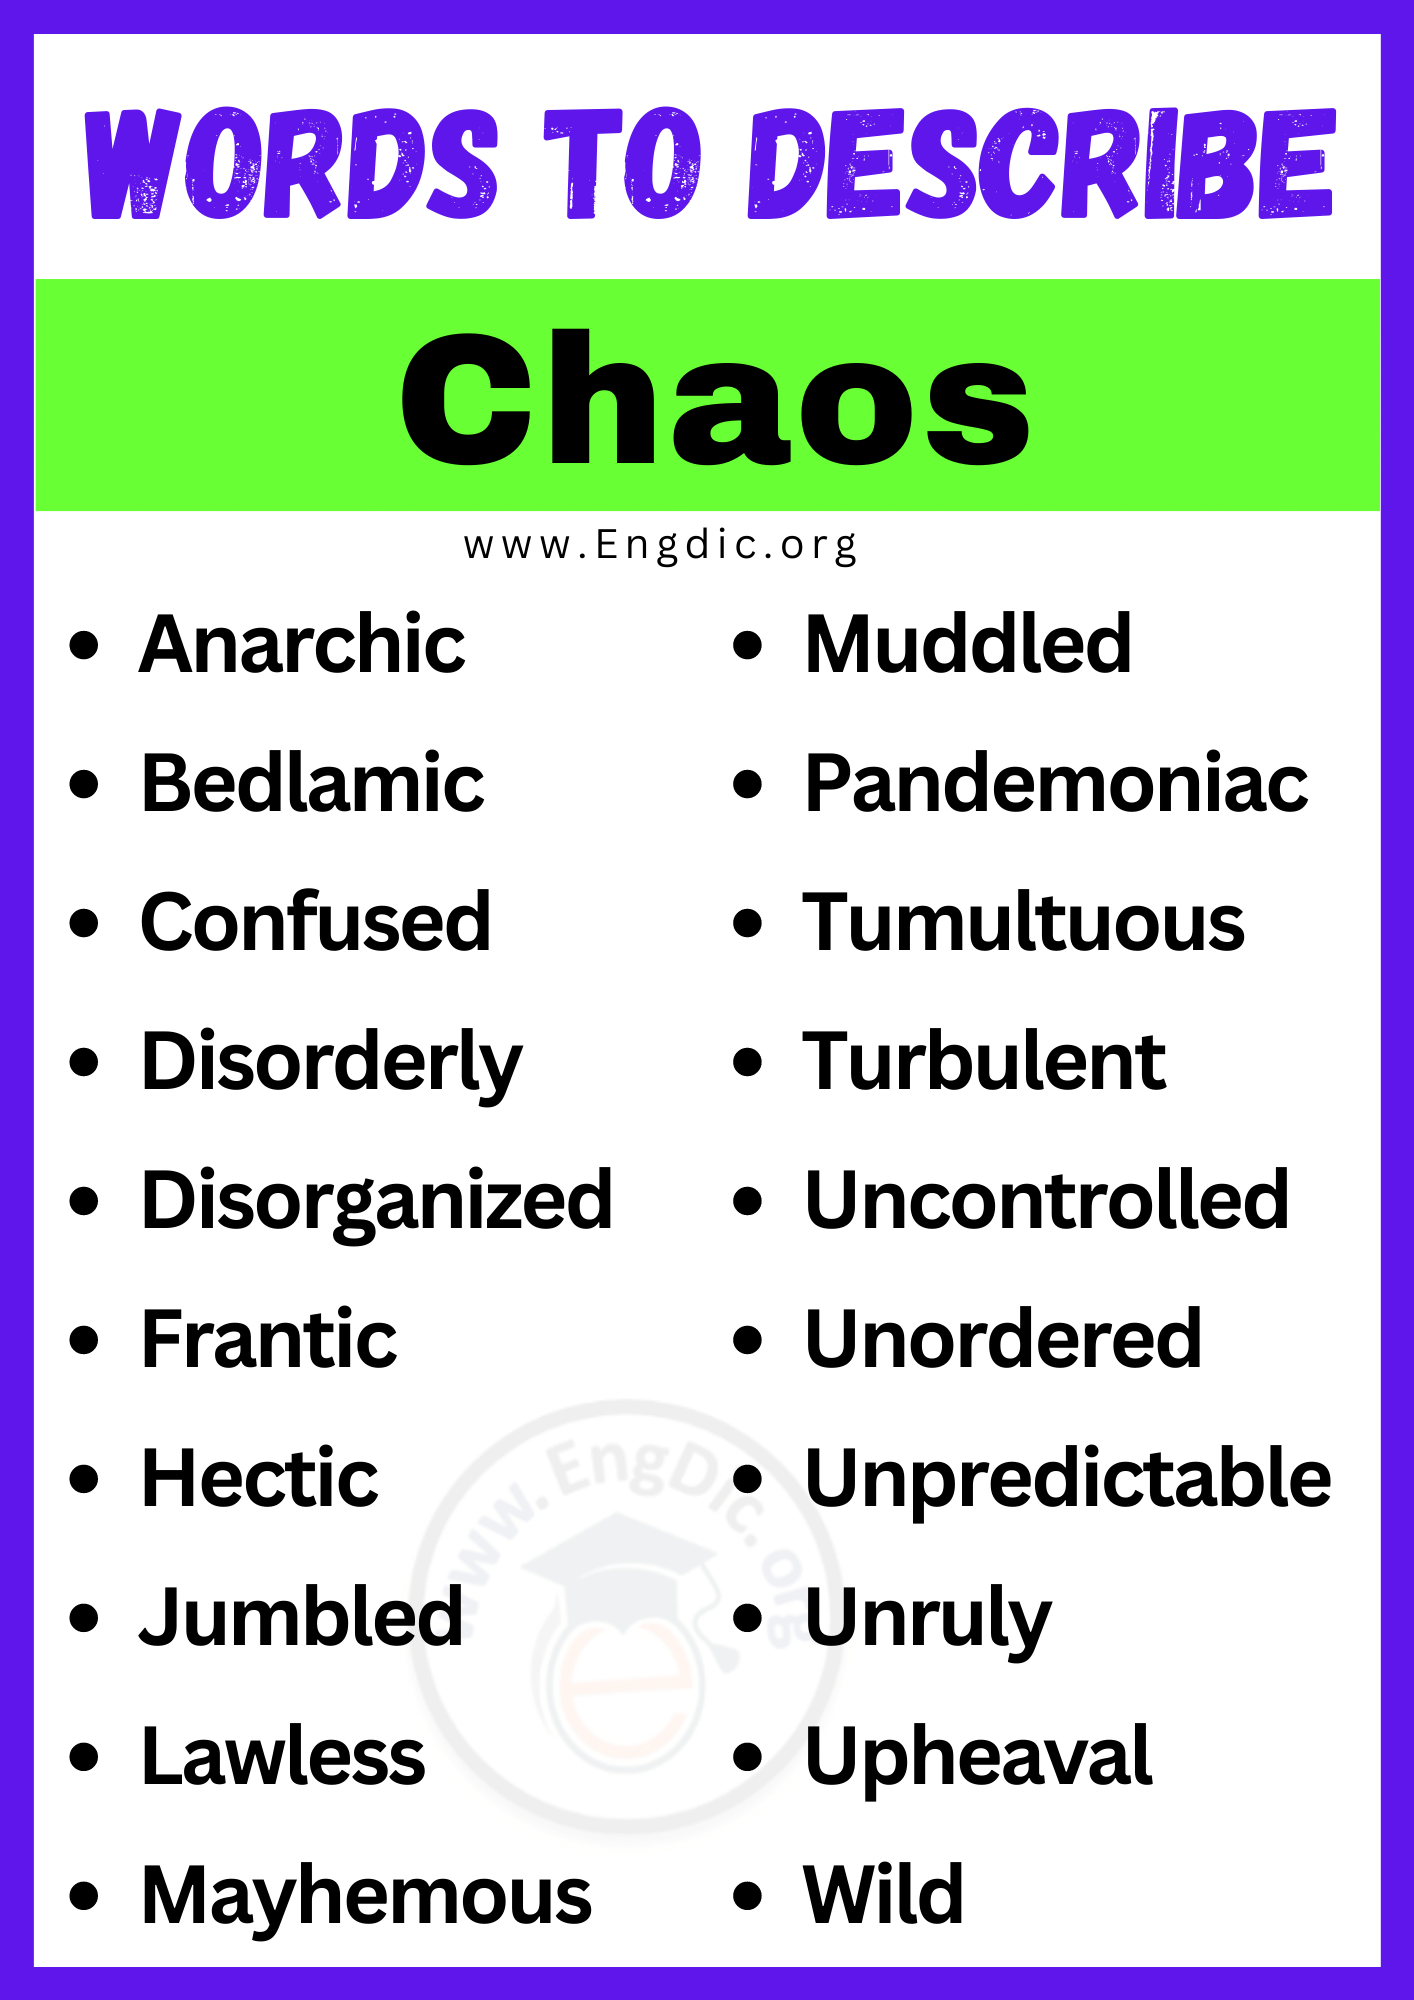 Words to Describe Chaos